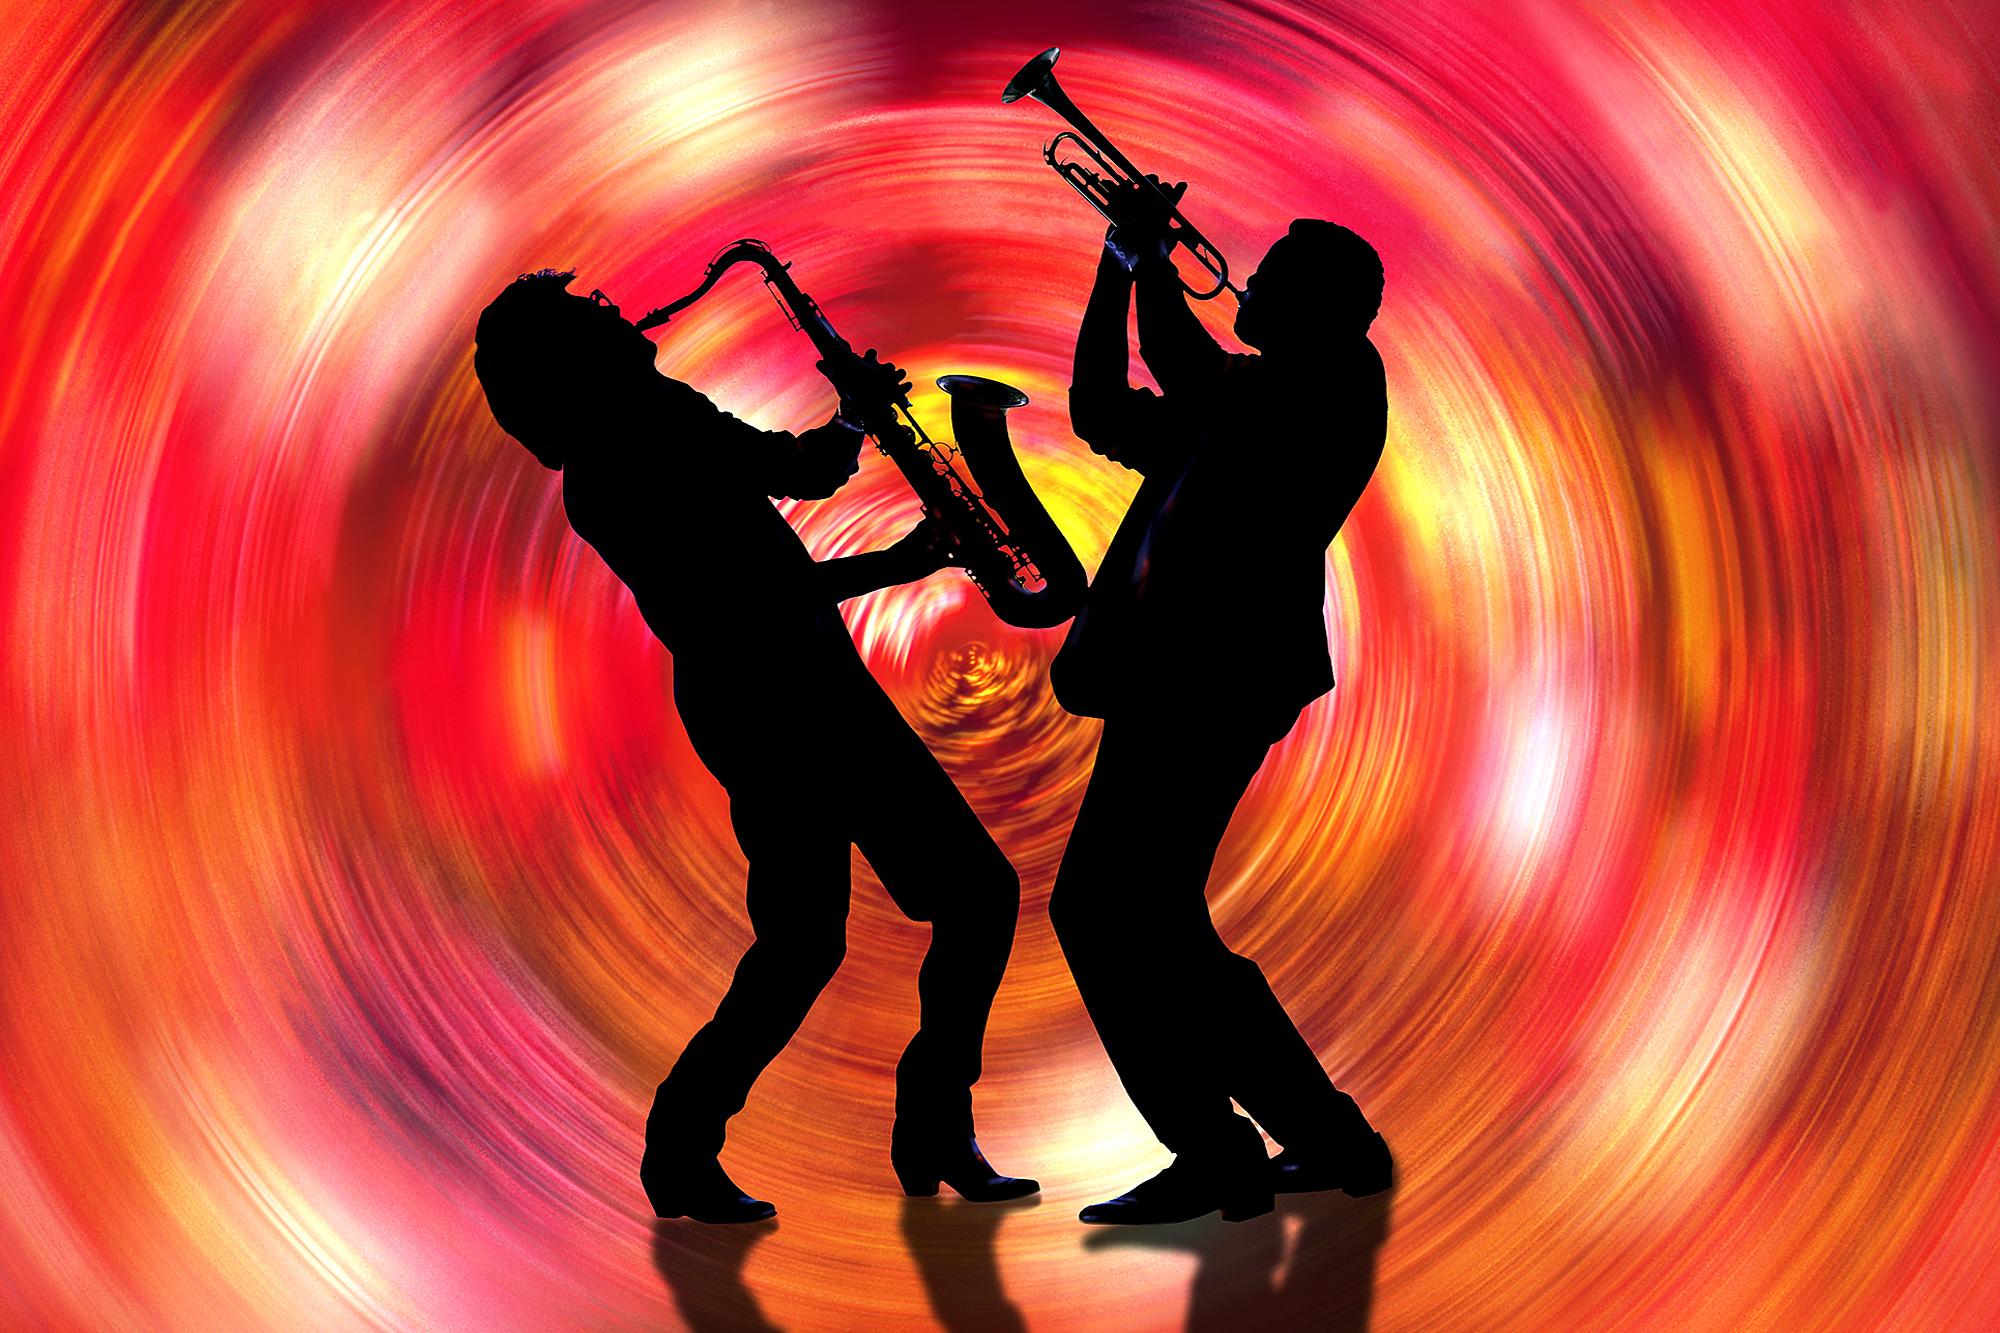 Color Photograph Mitchell Funk - Ensemble de musiciens de jazz Saxophone et trompette en tourbillon rouge  - La musique, c'est la couleur